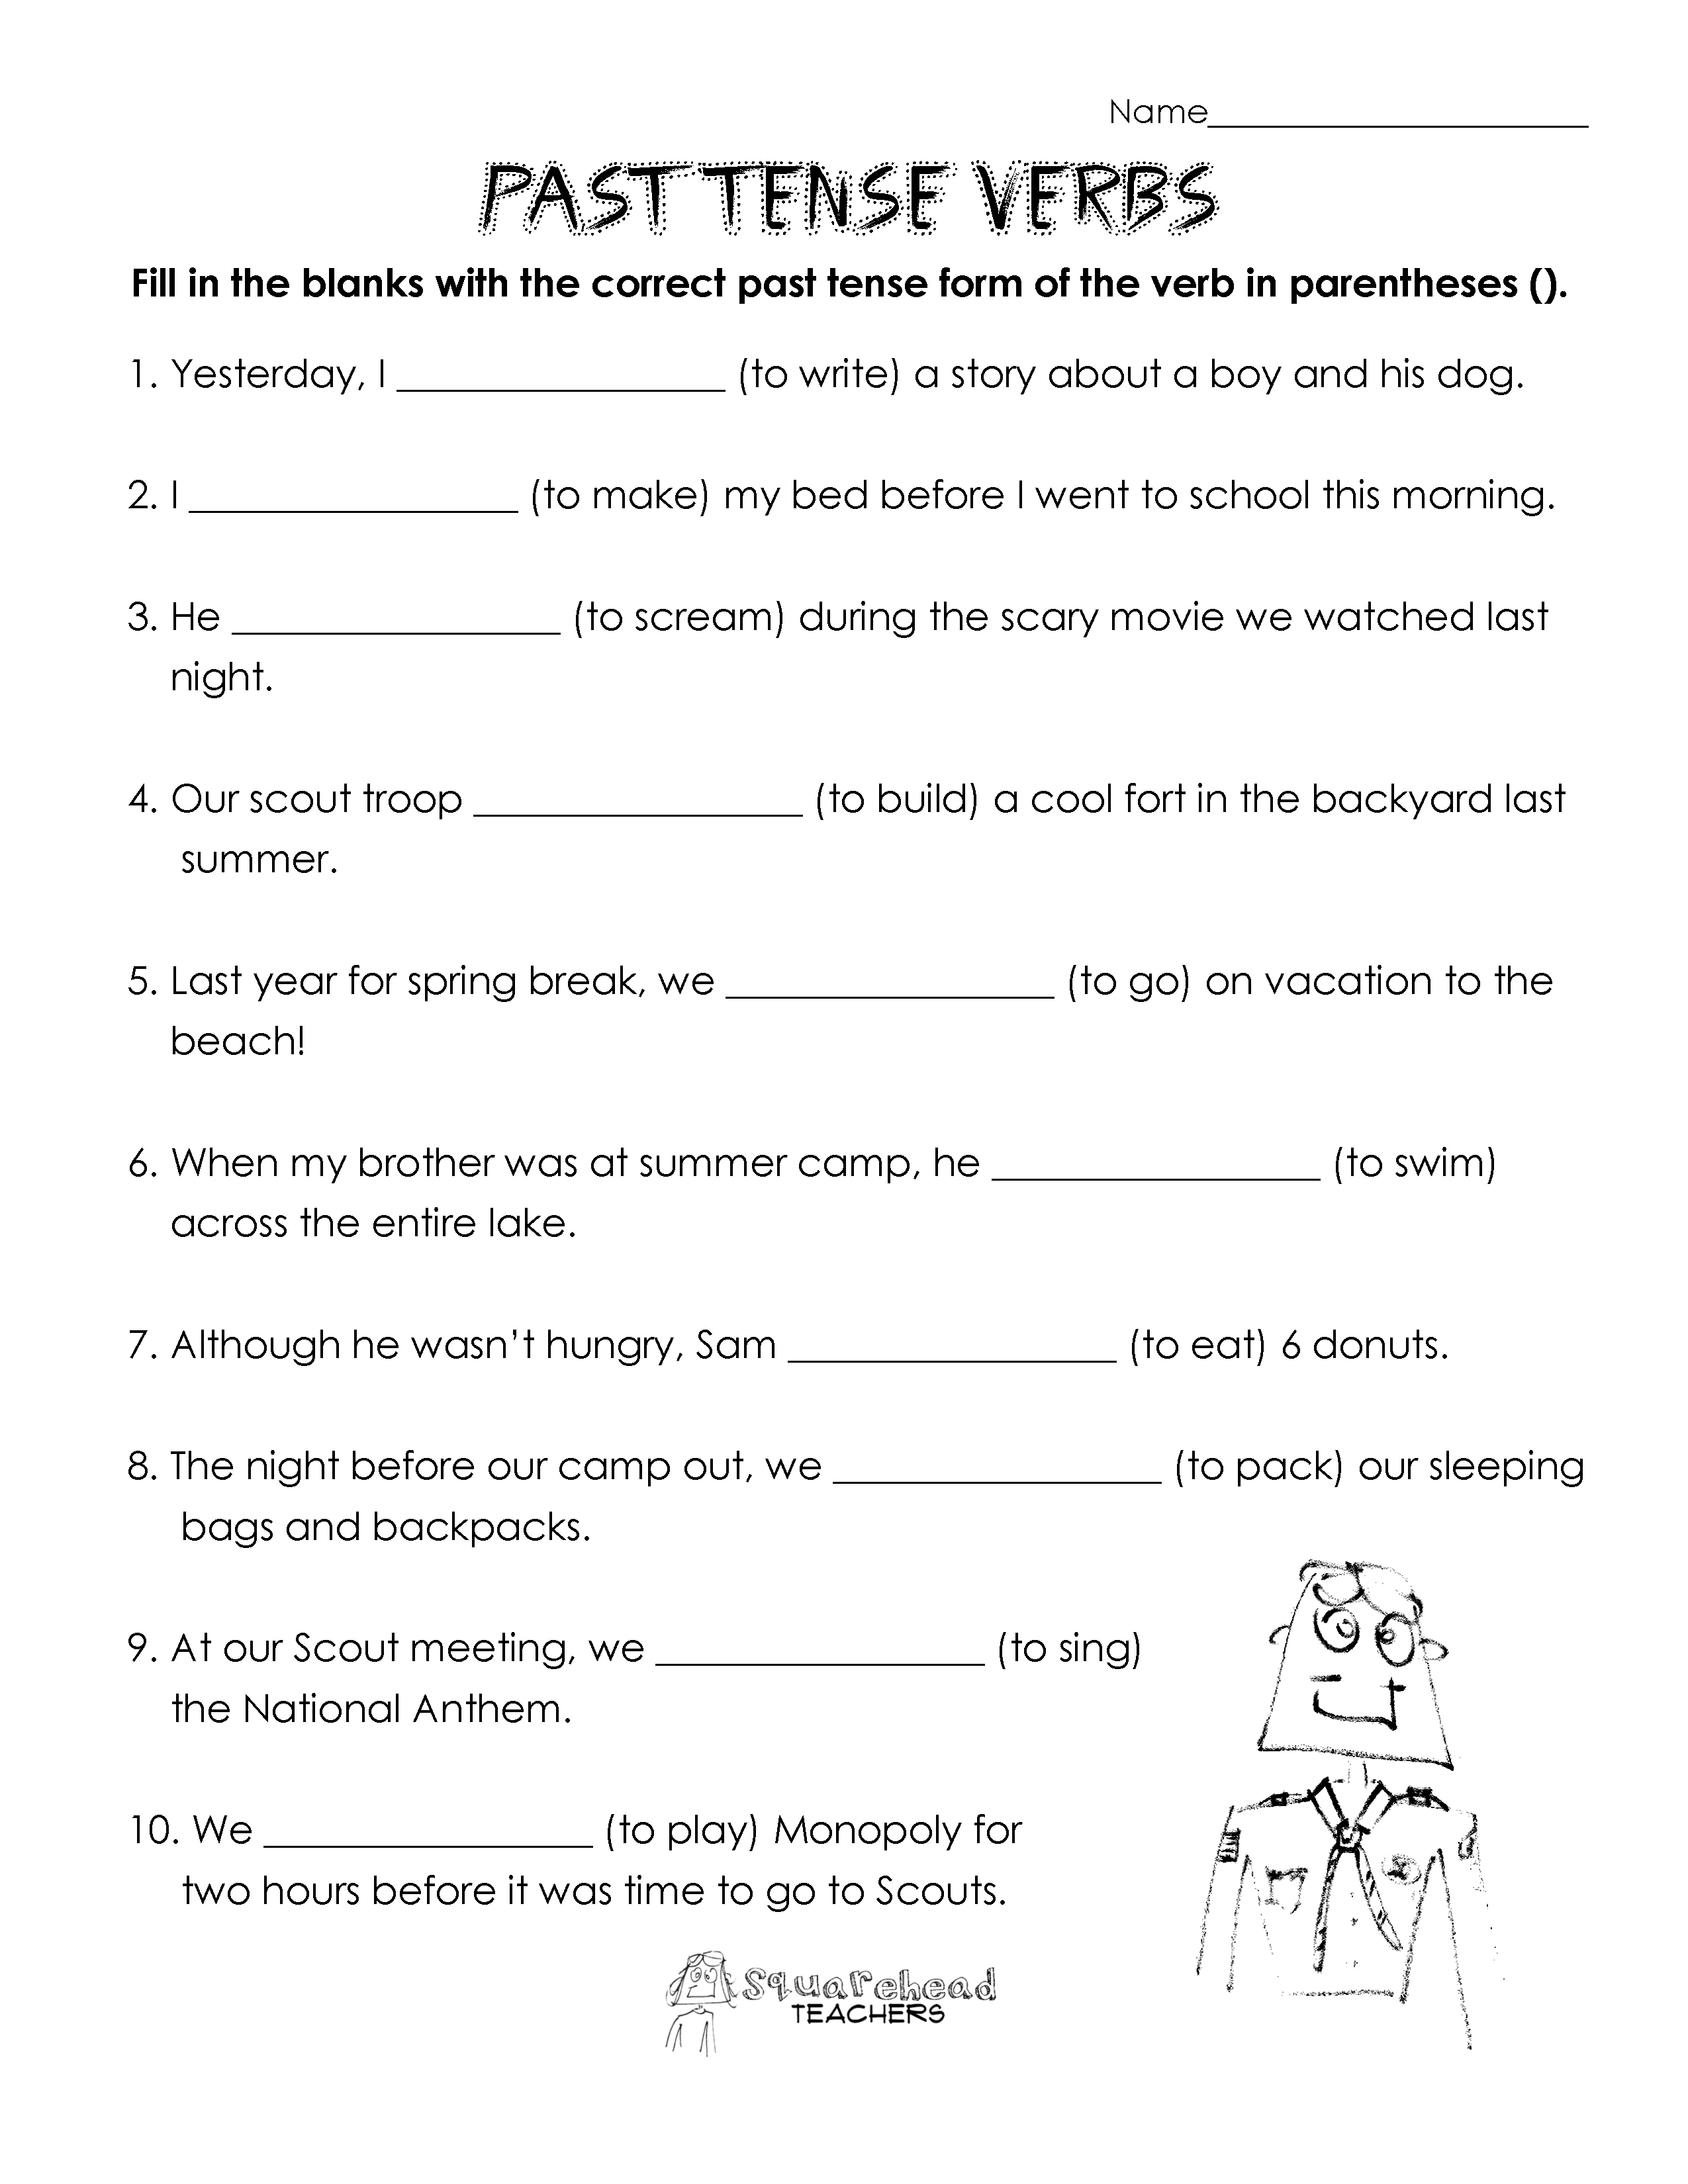 verb-tenses-exercises-free-printable-verb-tenses-esl-worksheets-engworksheets